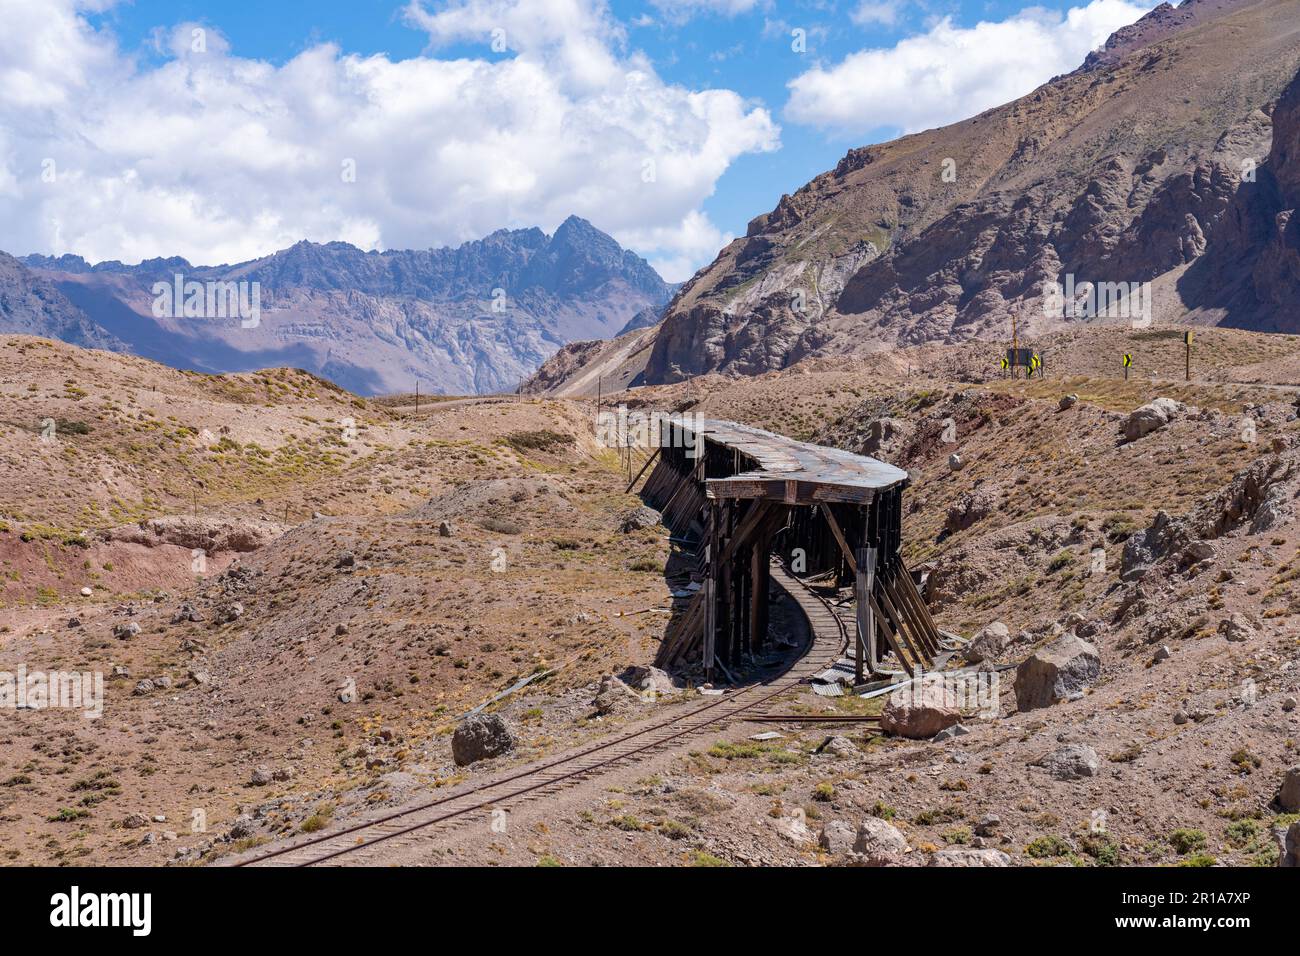 La neve di valanghe si stende sulla vecchia Transandine Railway a Puente del Inca nelle Ande in Argentina. Foto Stock